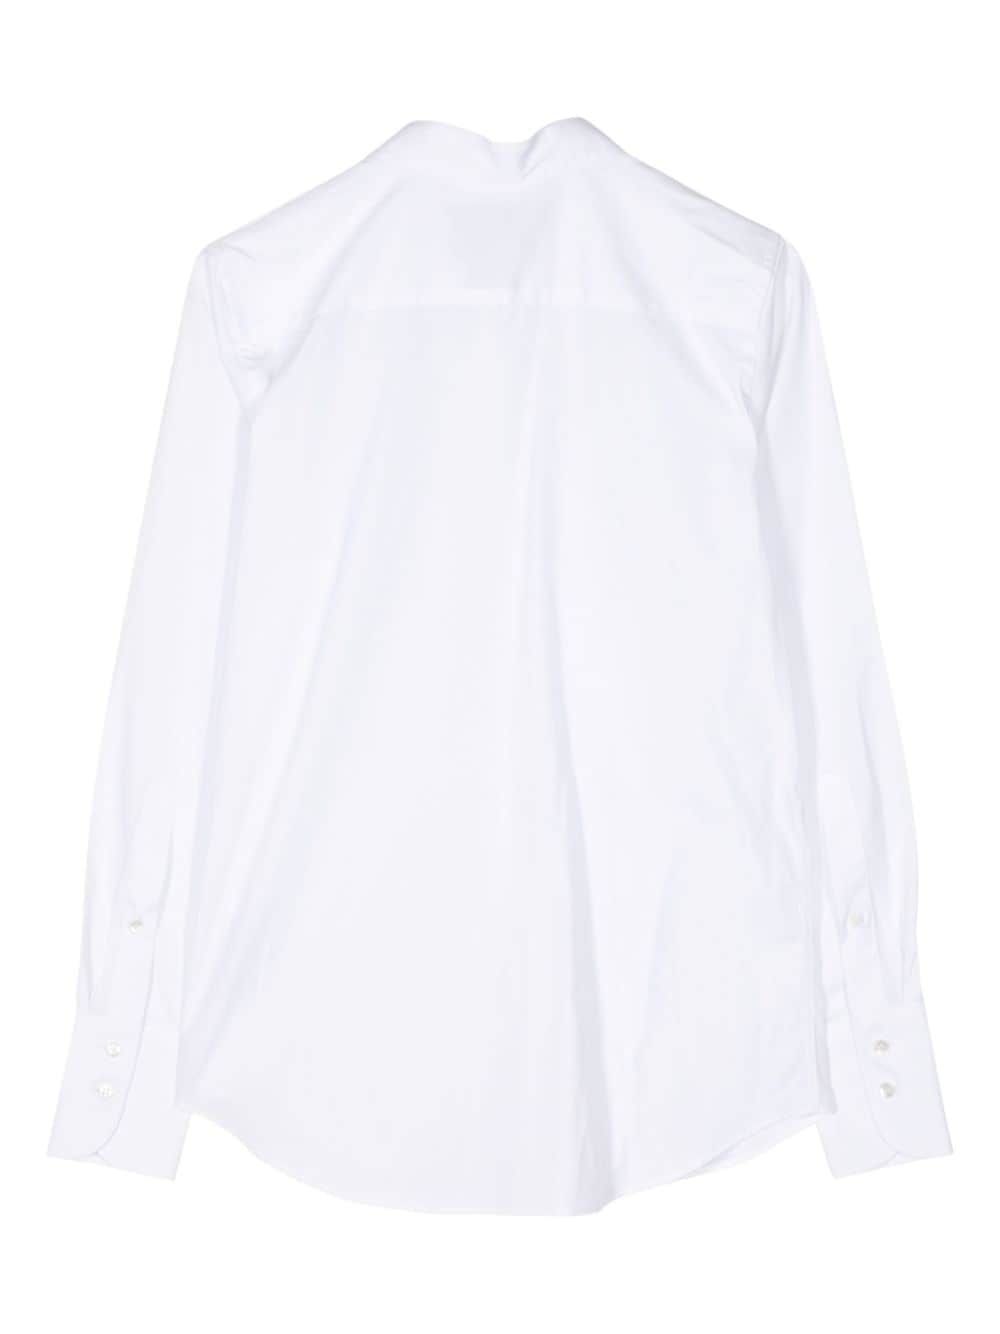 SA SU PHI classic collar cotton shirt - Wit